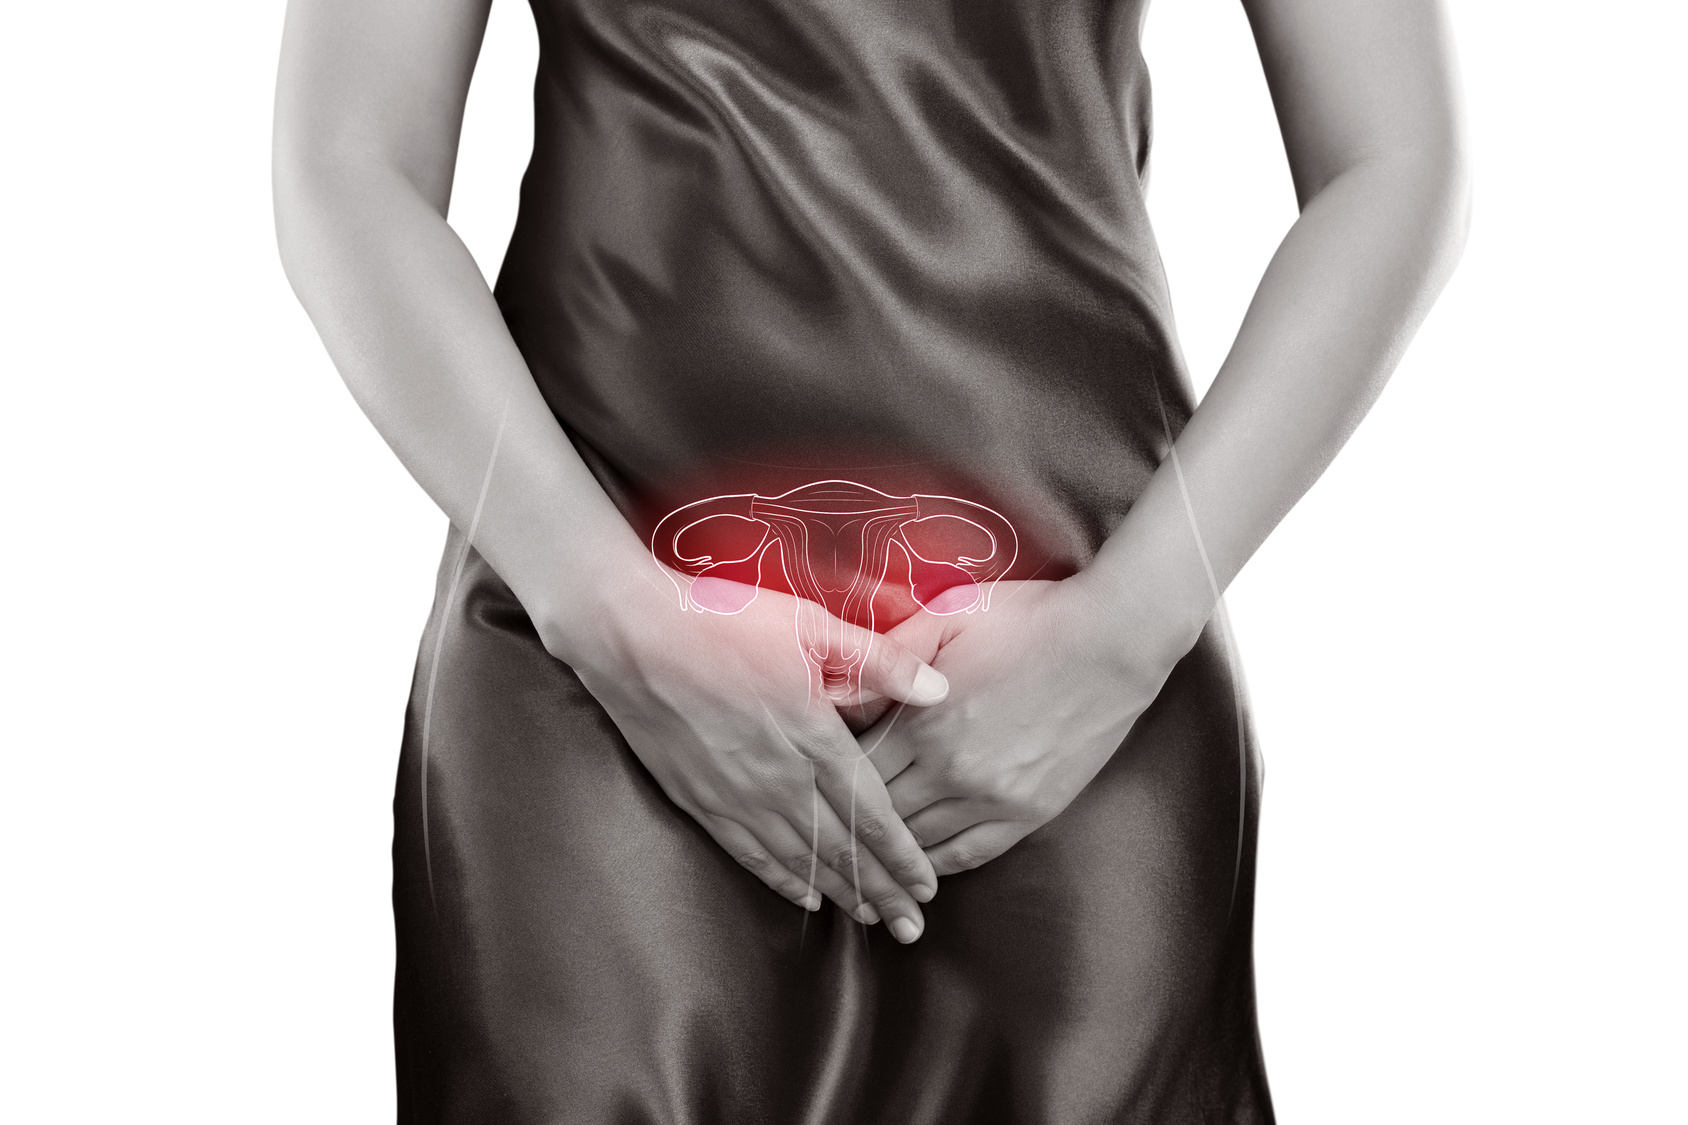 Síndrome de Ovarios Poliquísticos: ¿Qué es y qué síntomas provoca?